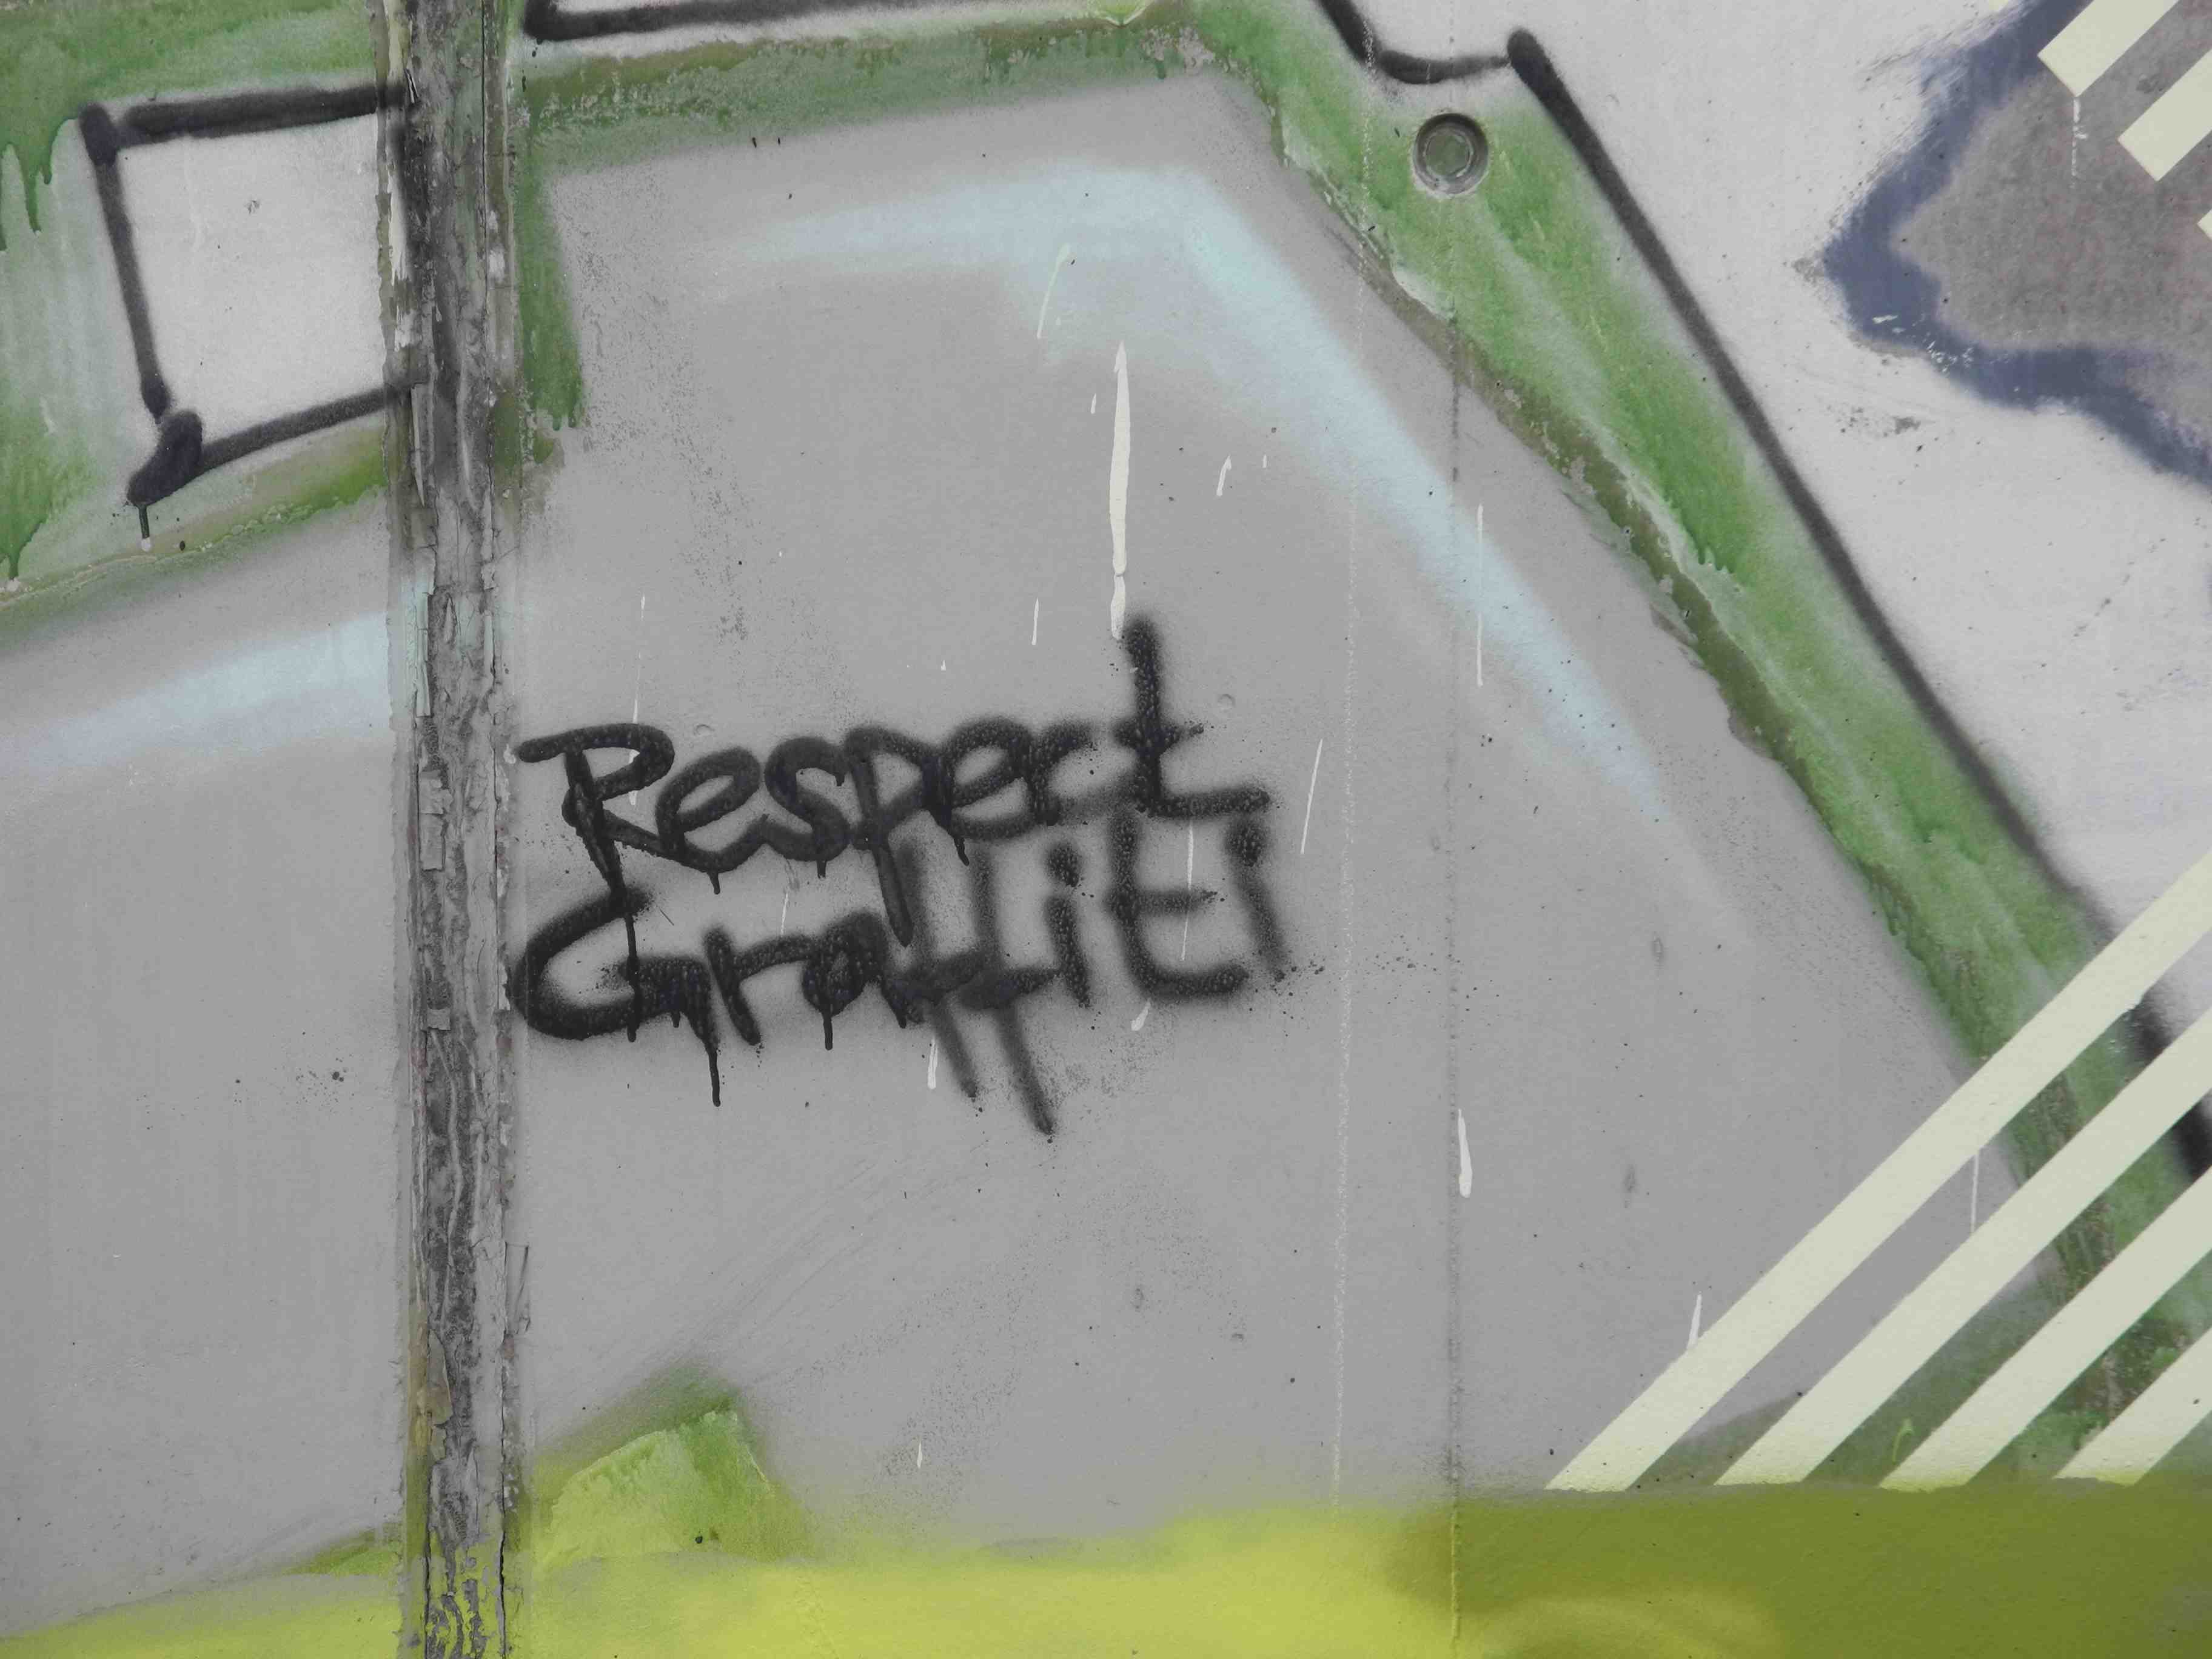 respectgraffiti